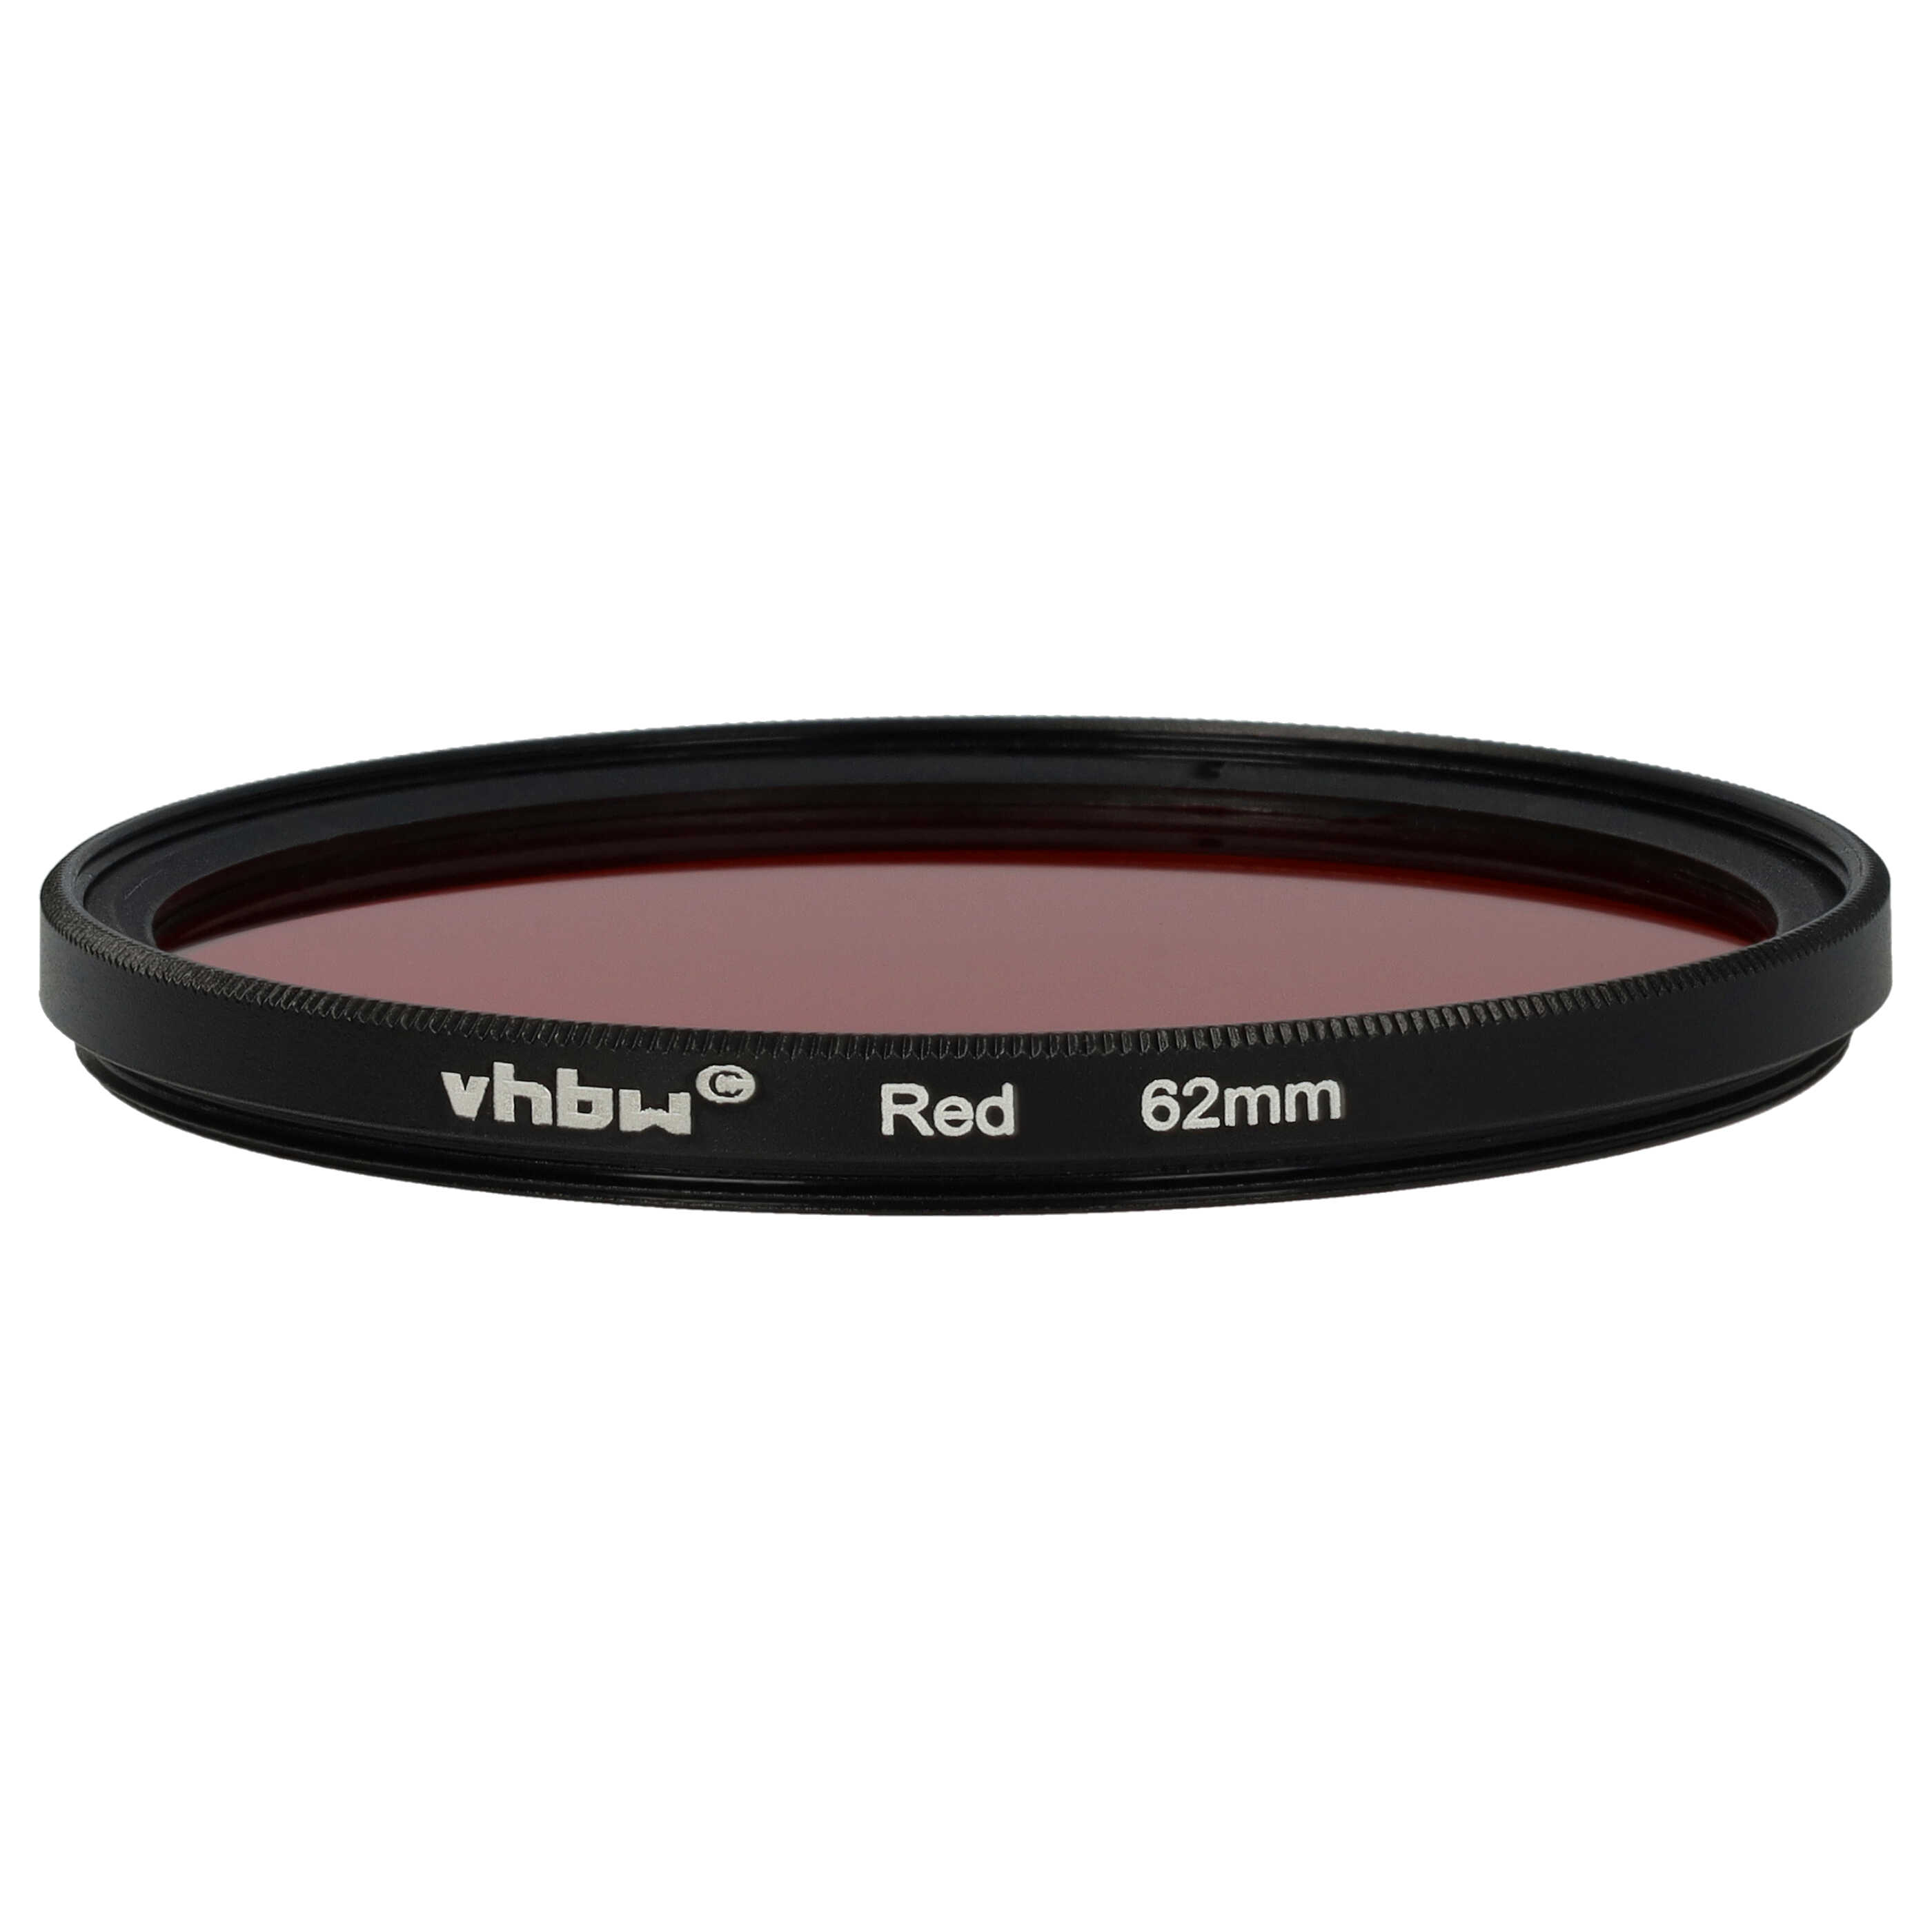 Farbfilter rot passend für Kamera Objektive mit 62 mm Filtergewinde - Rotfilter